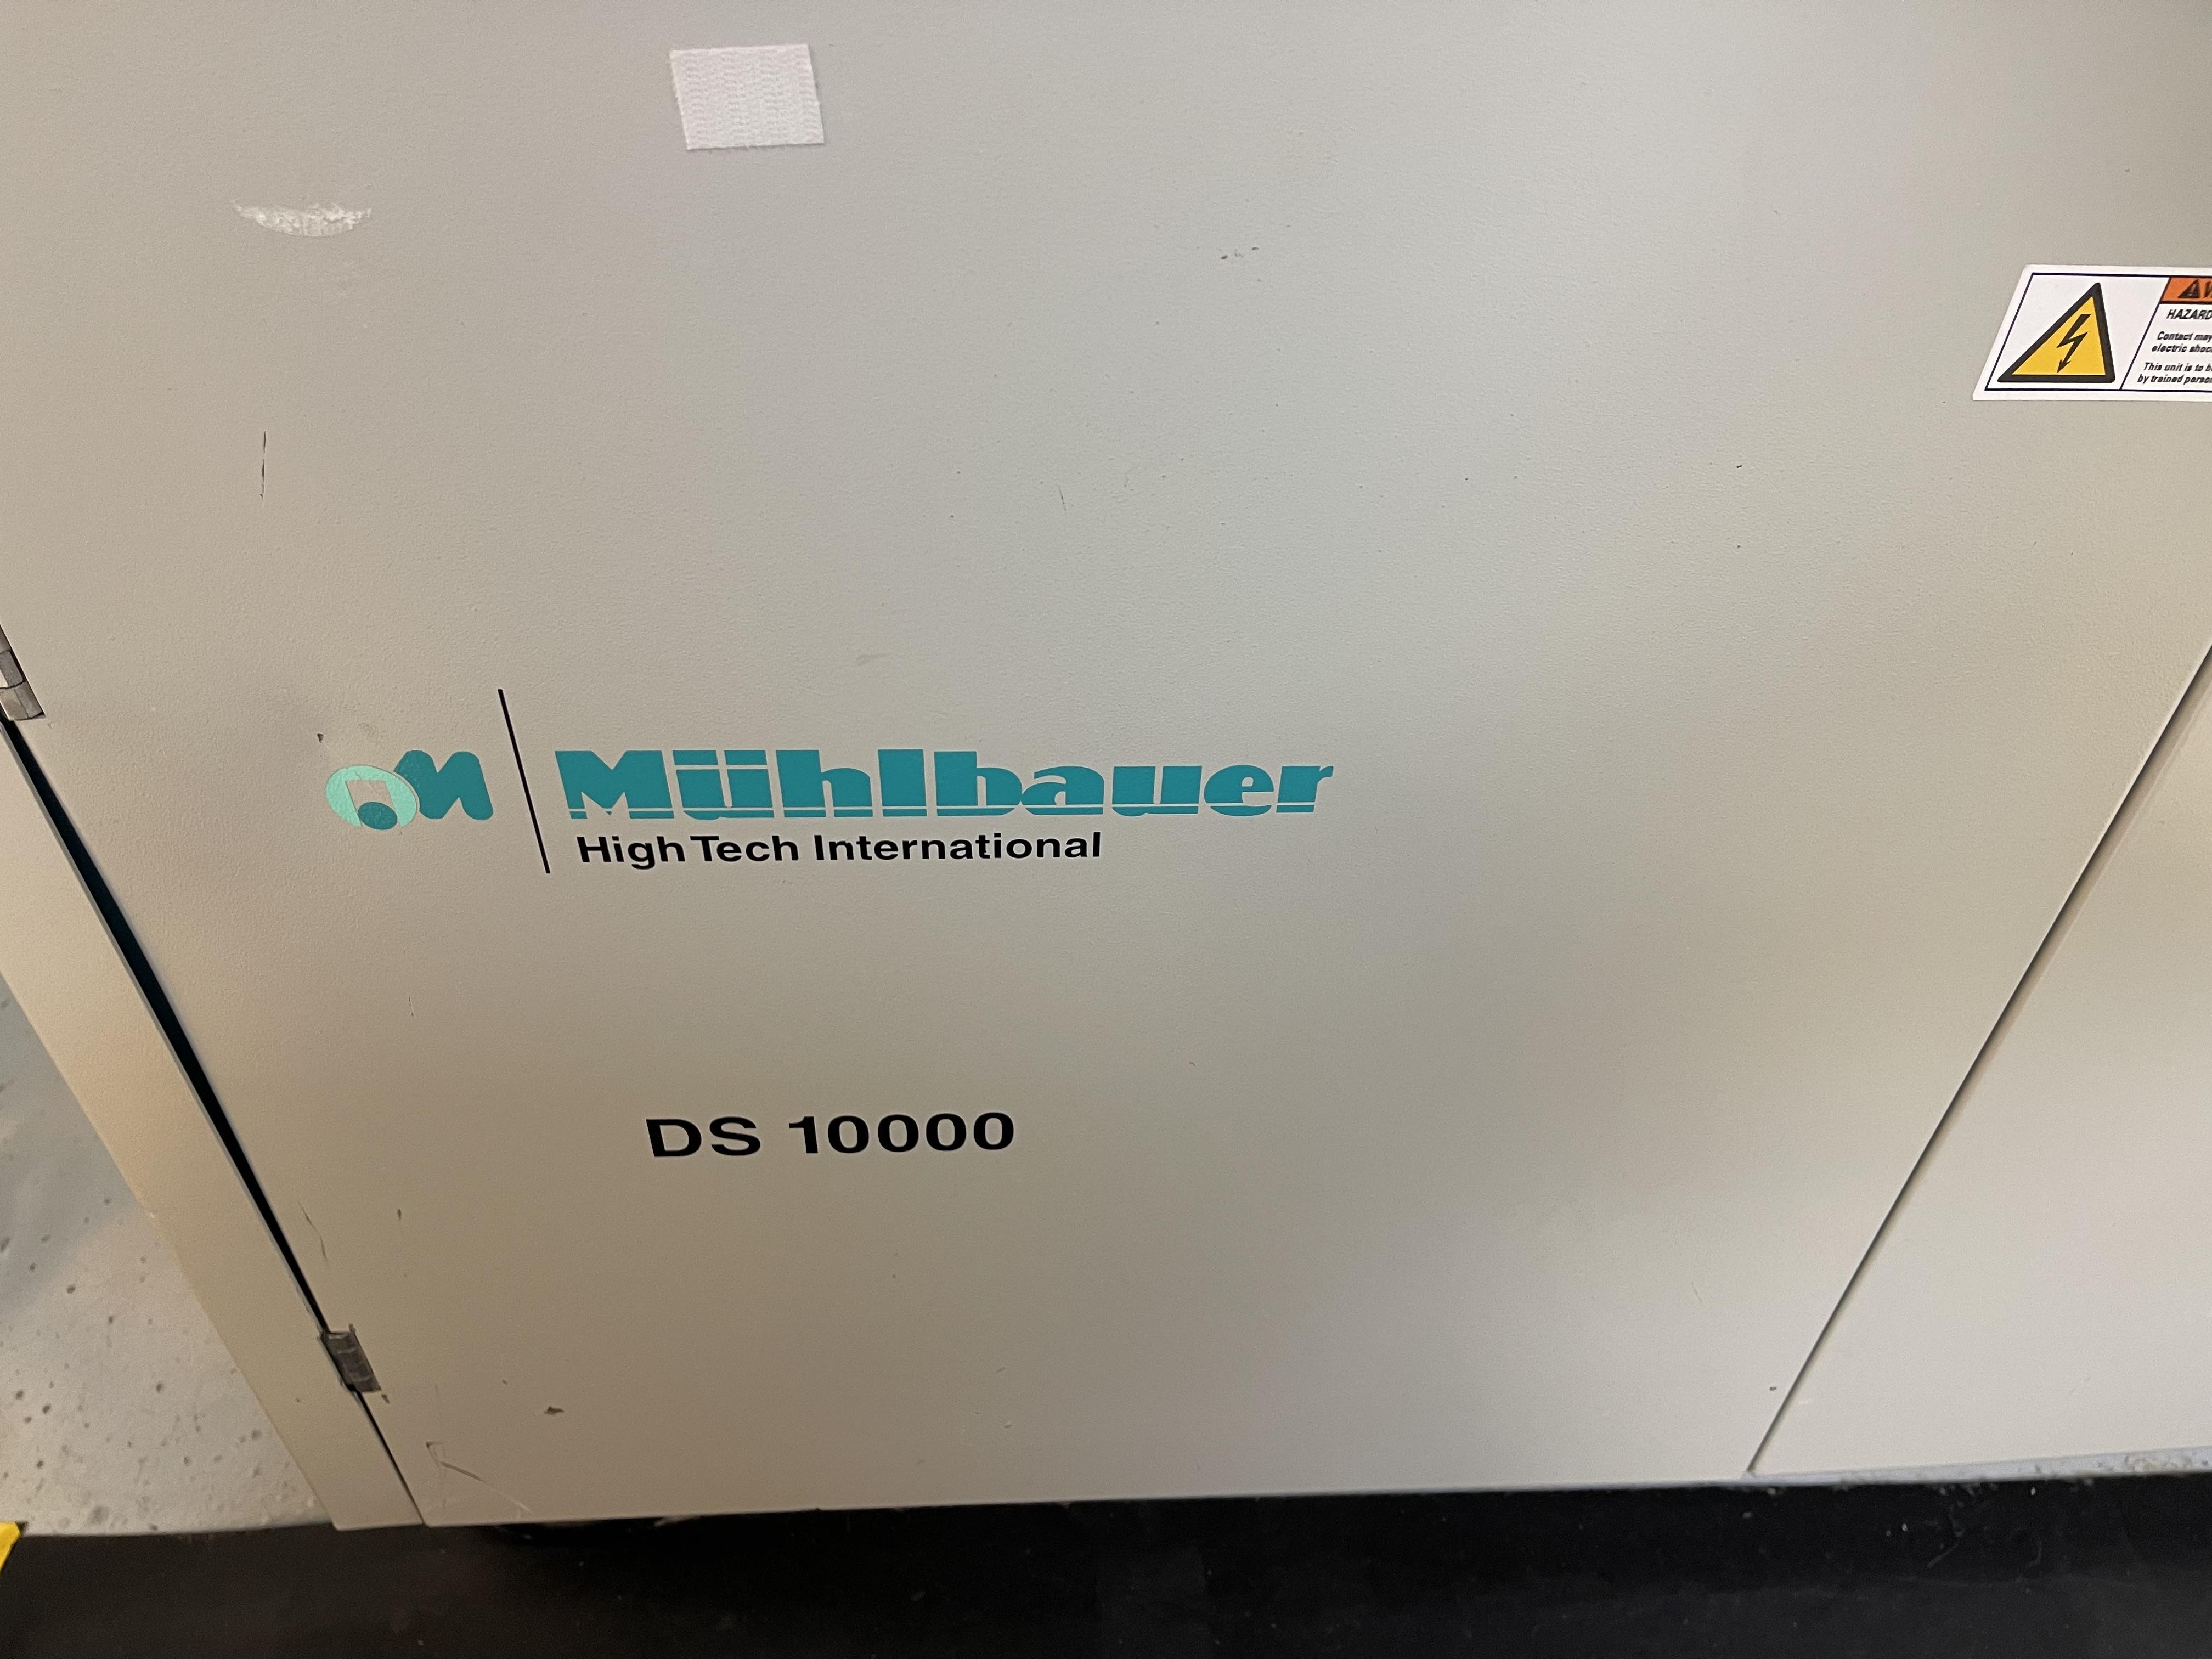 Muhlbauer DS 10000